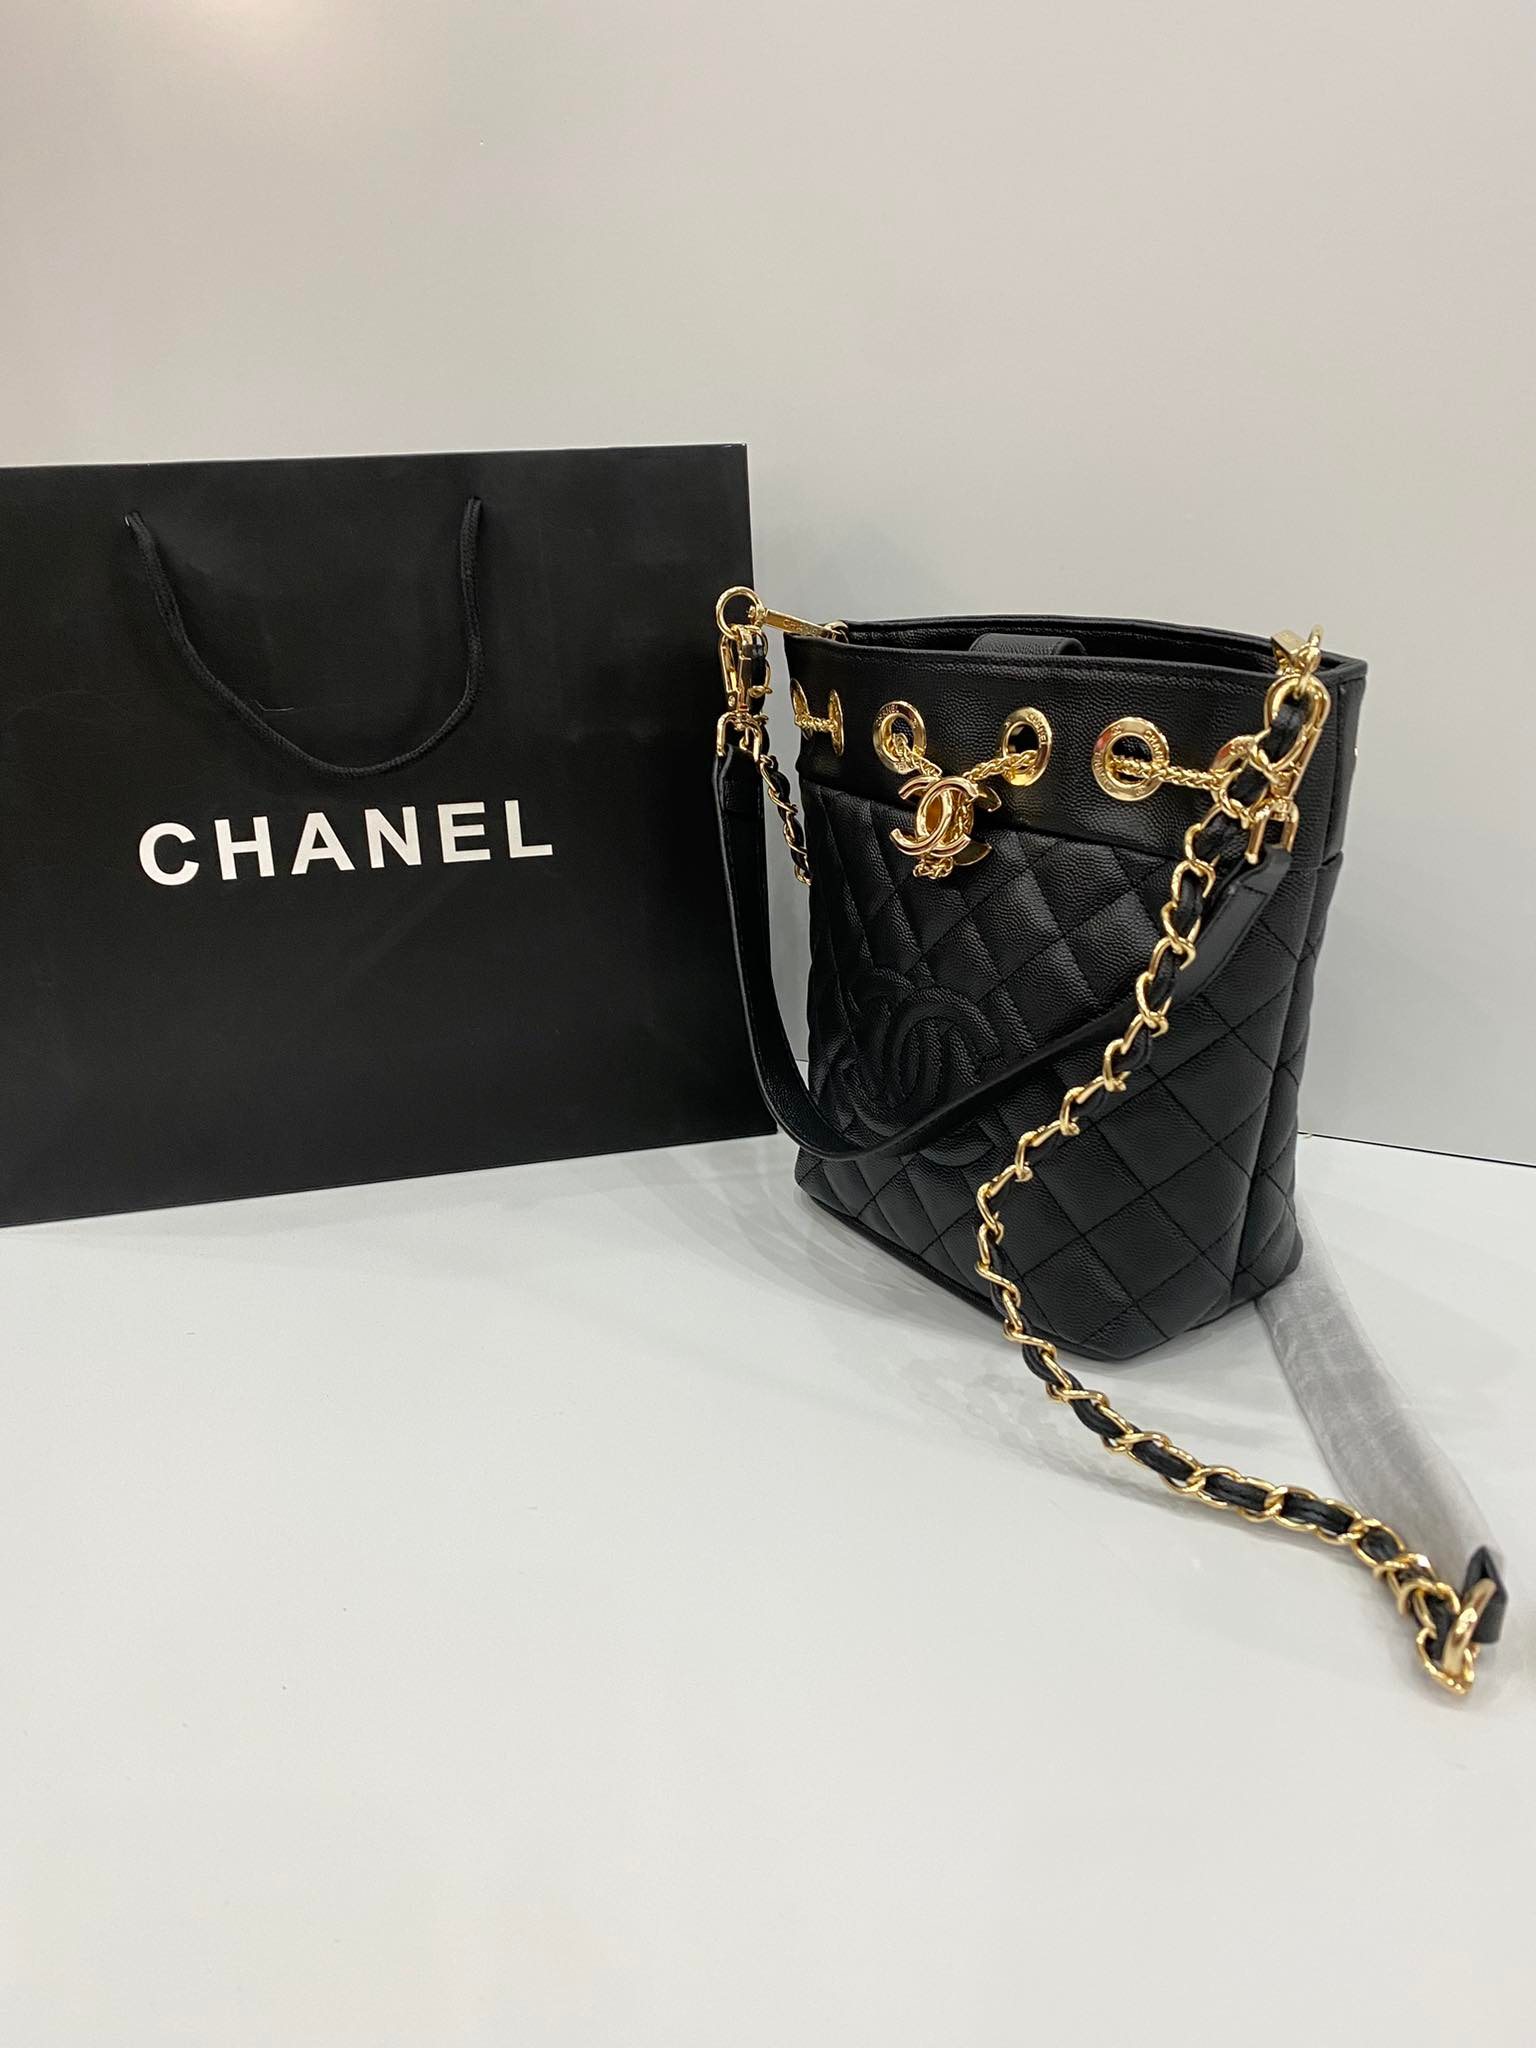 Chanel khai trương cửa hàng mỹ phẩm và mắt kính đầu tiên ở TPHCM   Harpers Bazaar